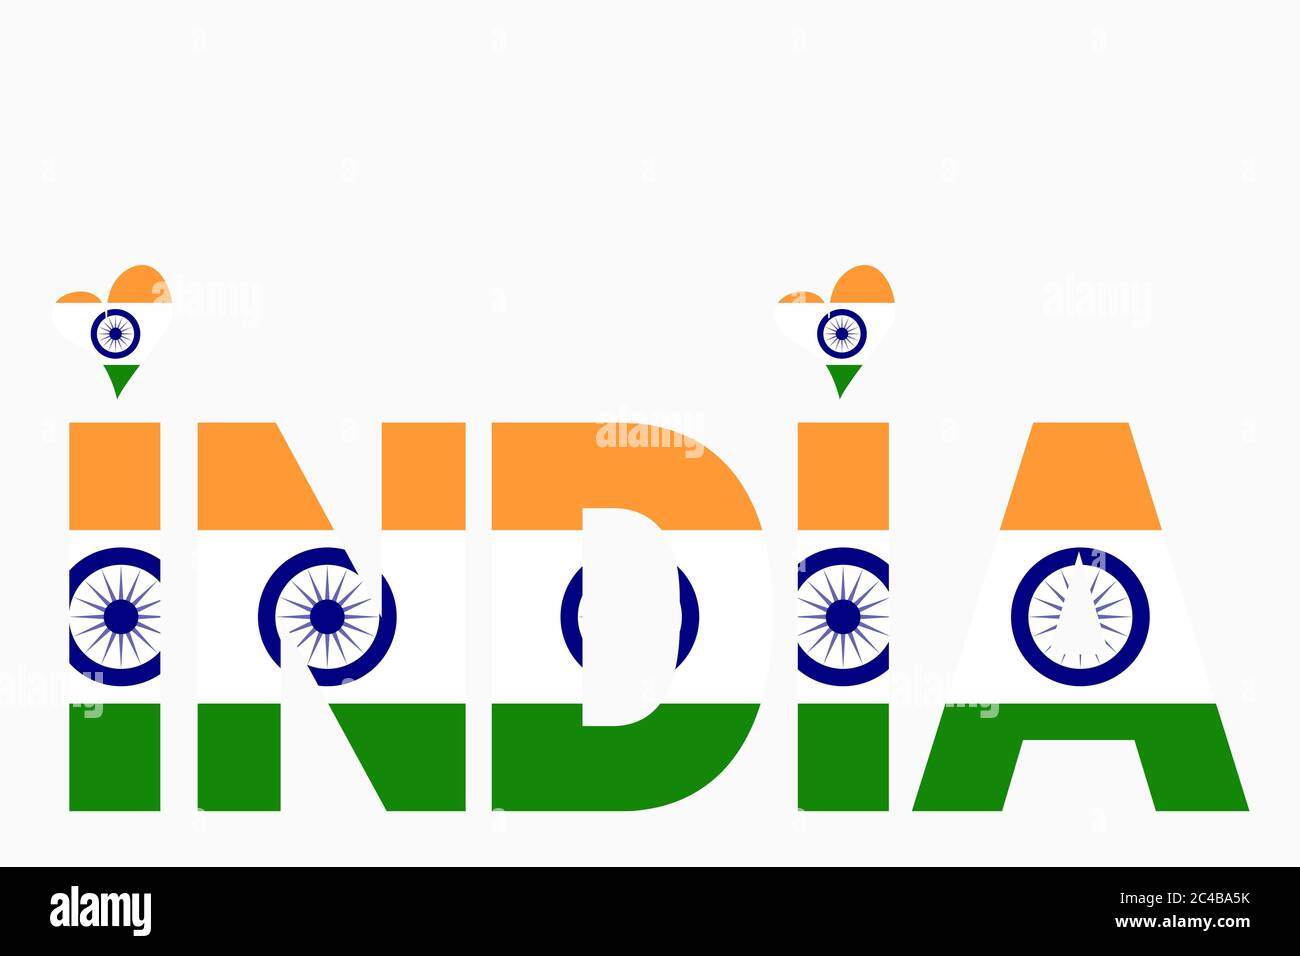 Illustrazione dell'India scritta con i colori della bandiera nazionale indiana. Tiranga (3 colori - Saffron Bianco e Verde) con la ruota blu navy Ashok Chakra Foto Stock